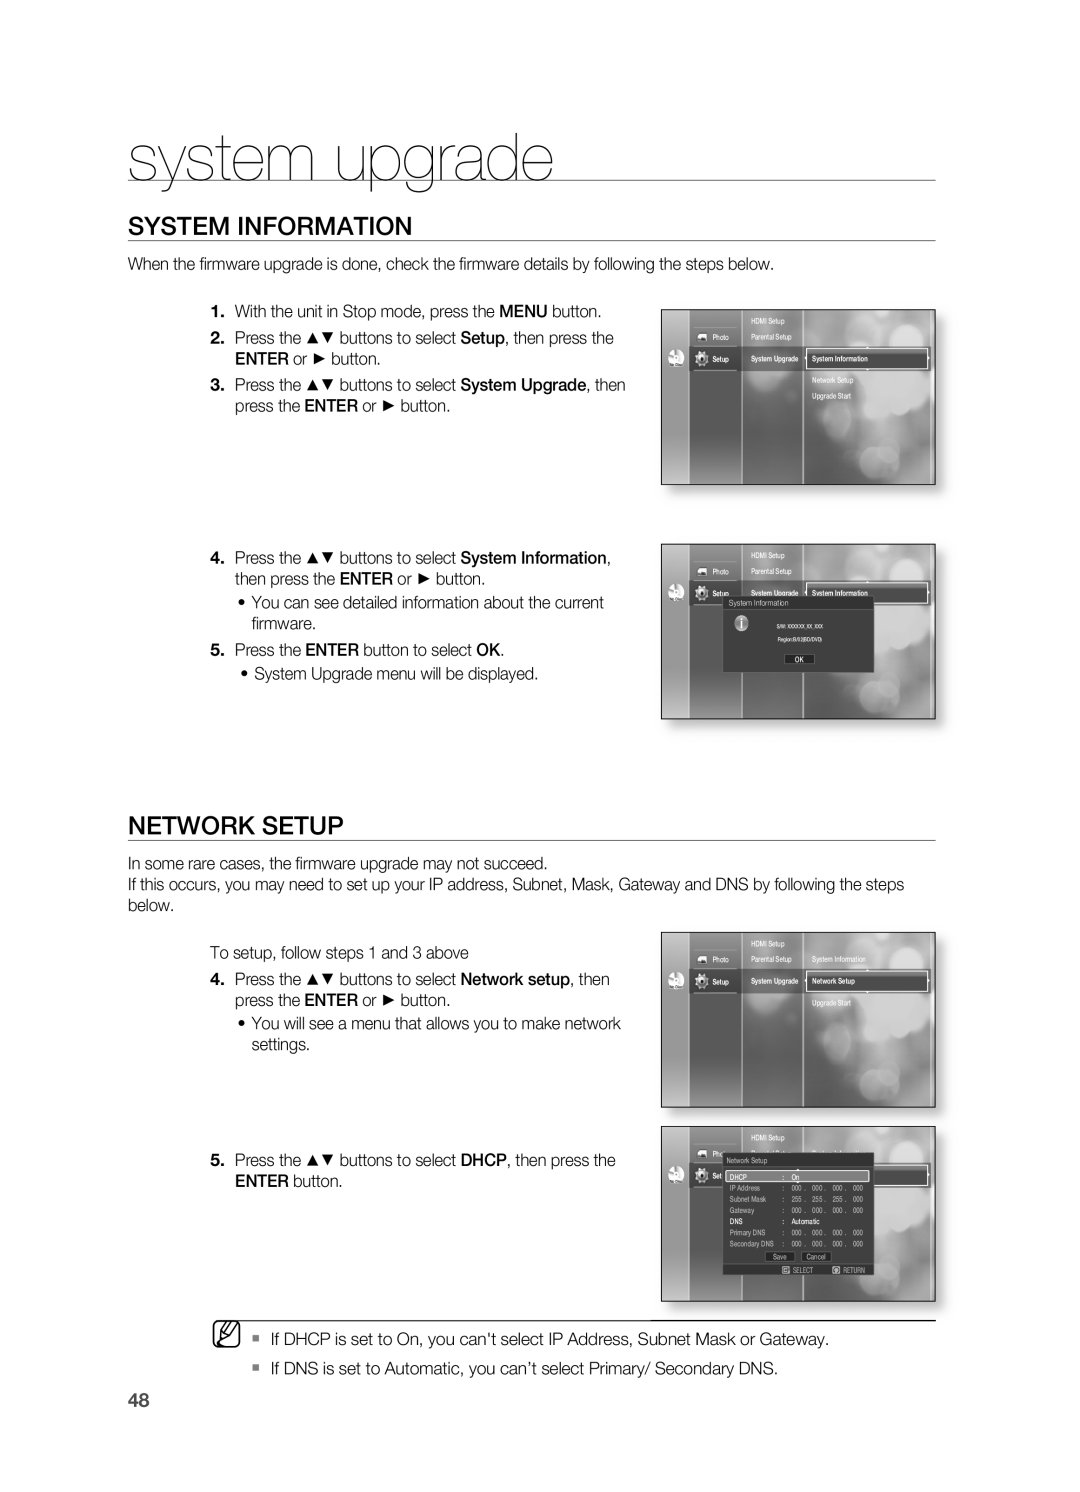 Samsung HT-BD2S manual SYSTEM InFORMATIOn, nETWORK SETUP, system upgrade, EnTER button 